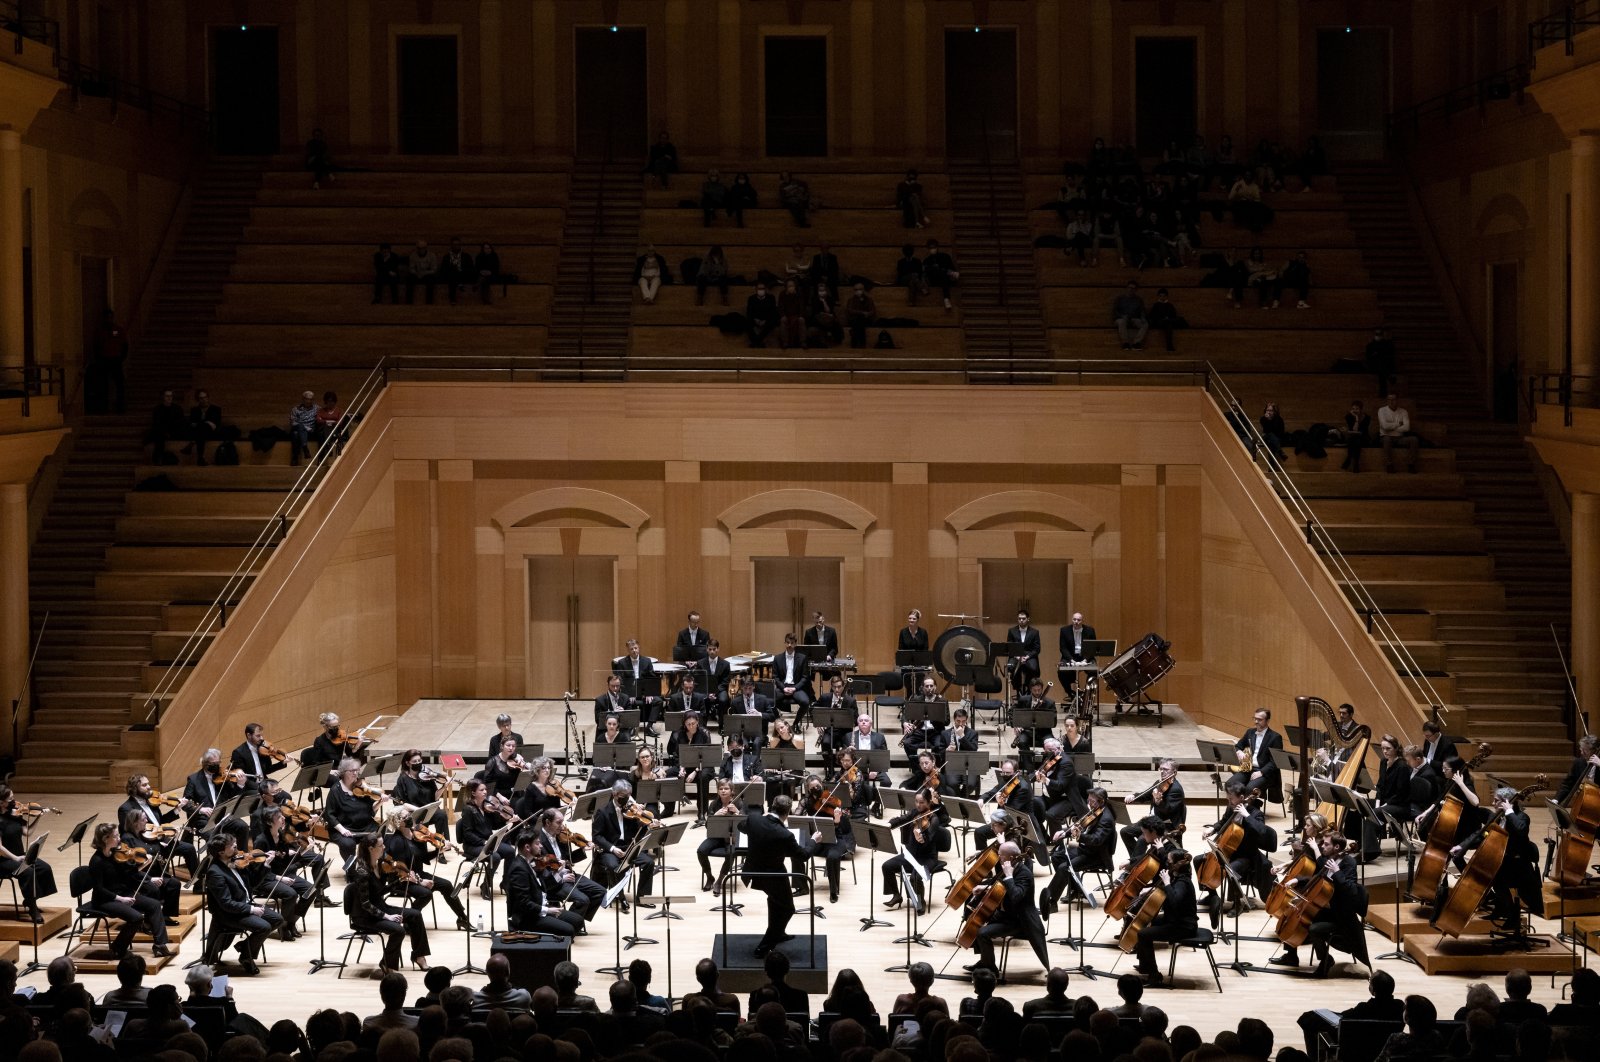 Orkestra Prancis membawakan ‘Notes of Hope’ untuk musisi yang terkena gempa